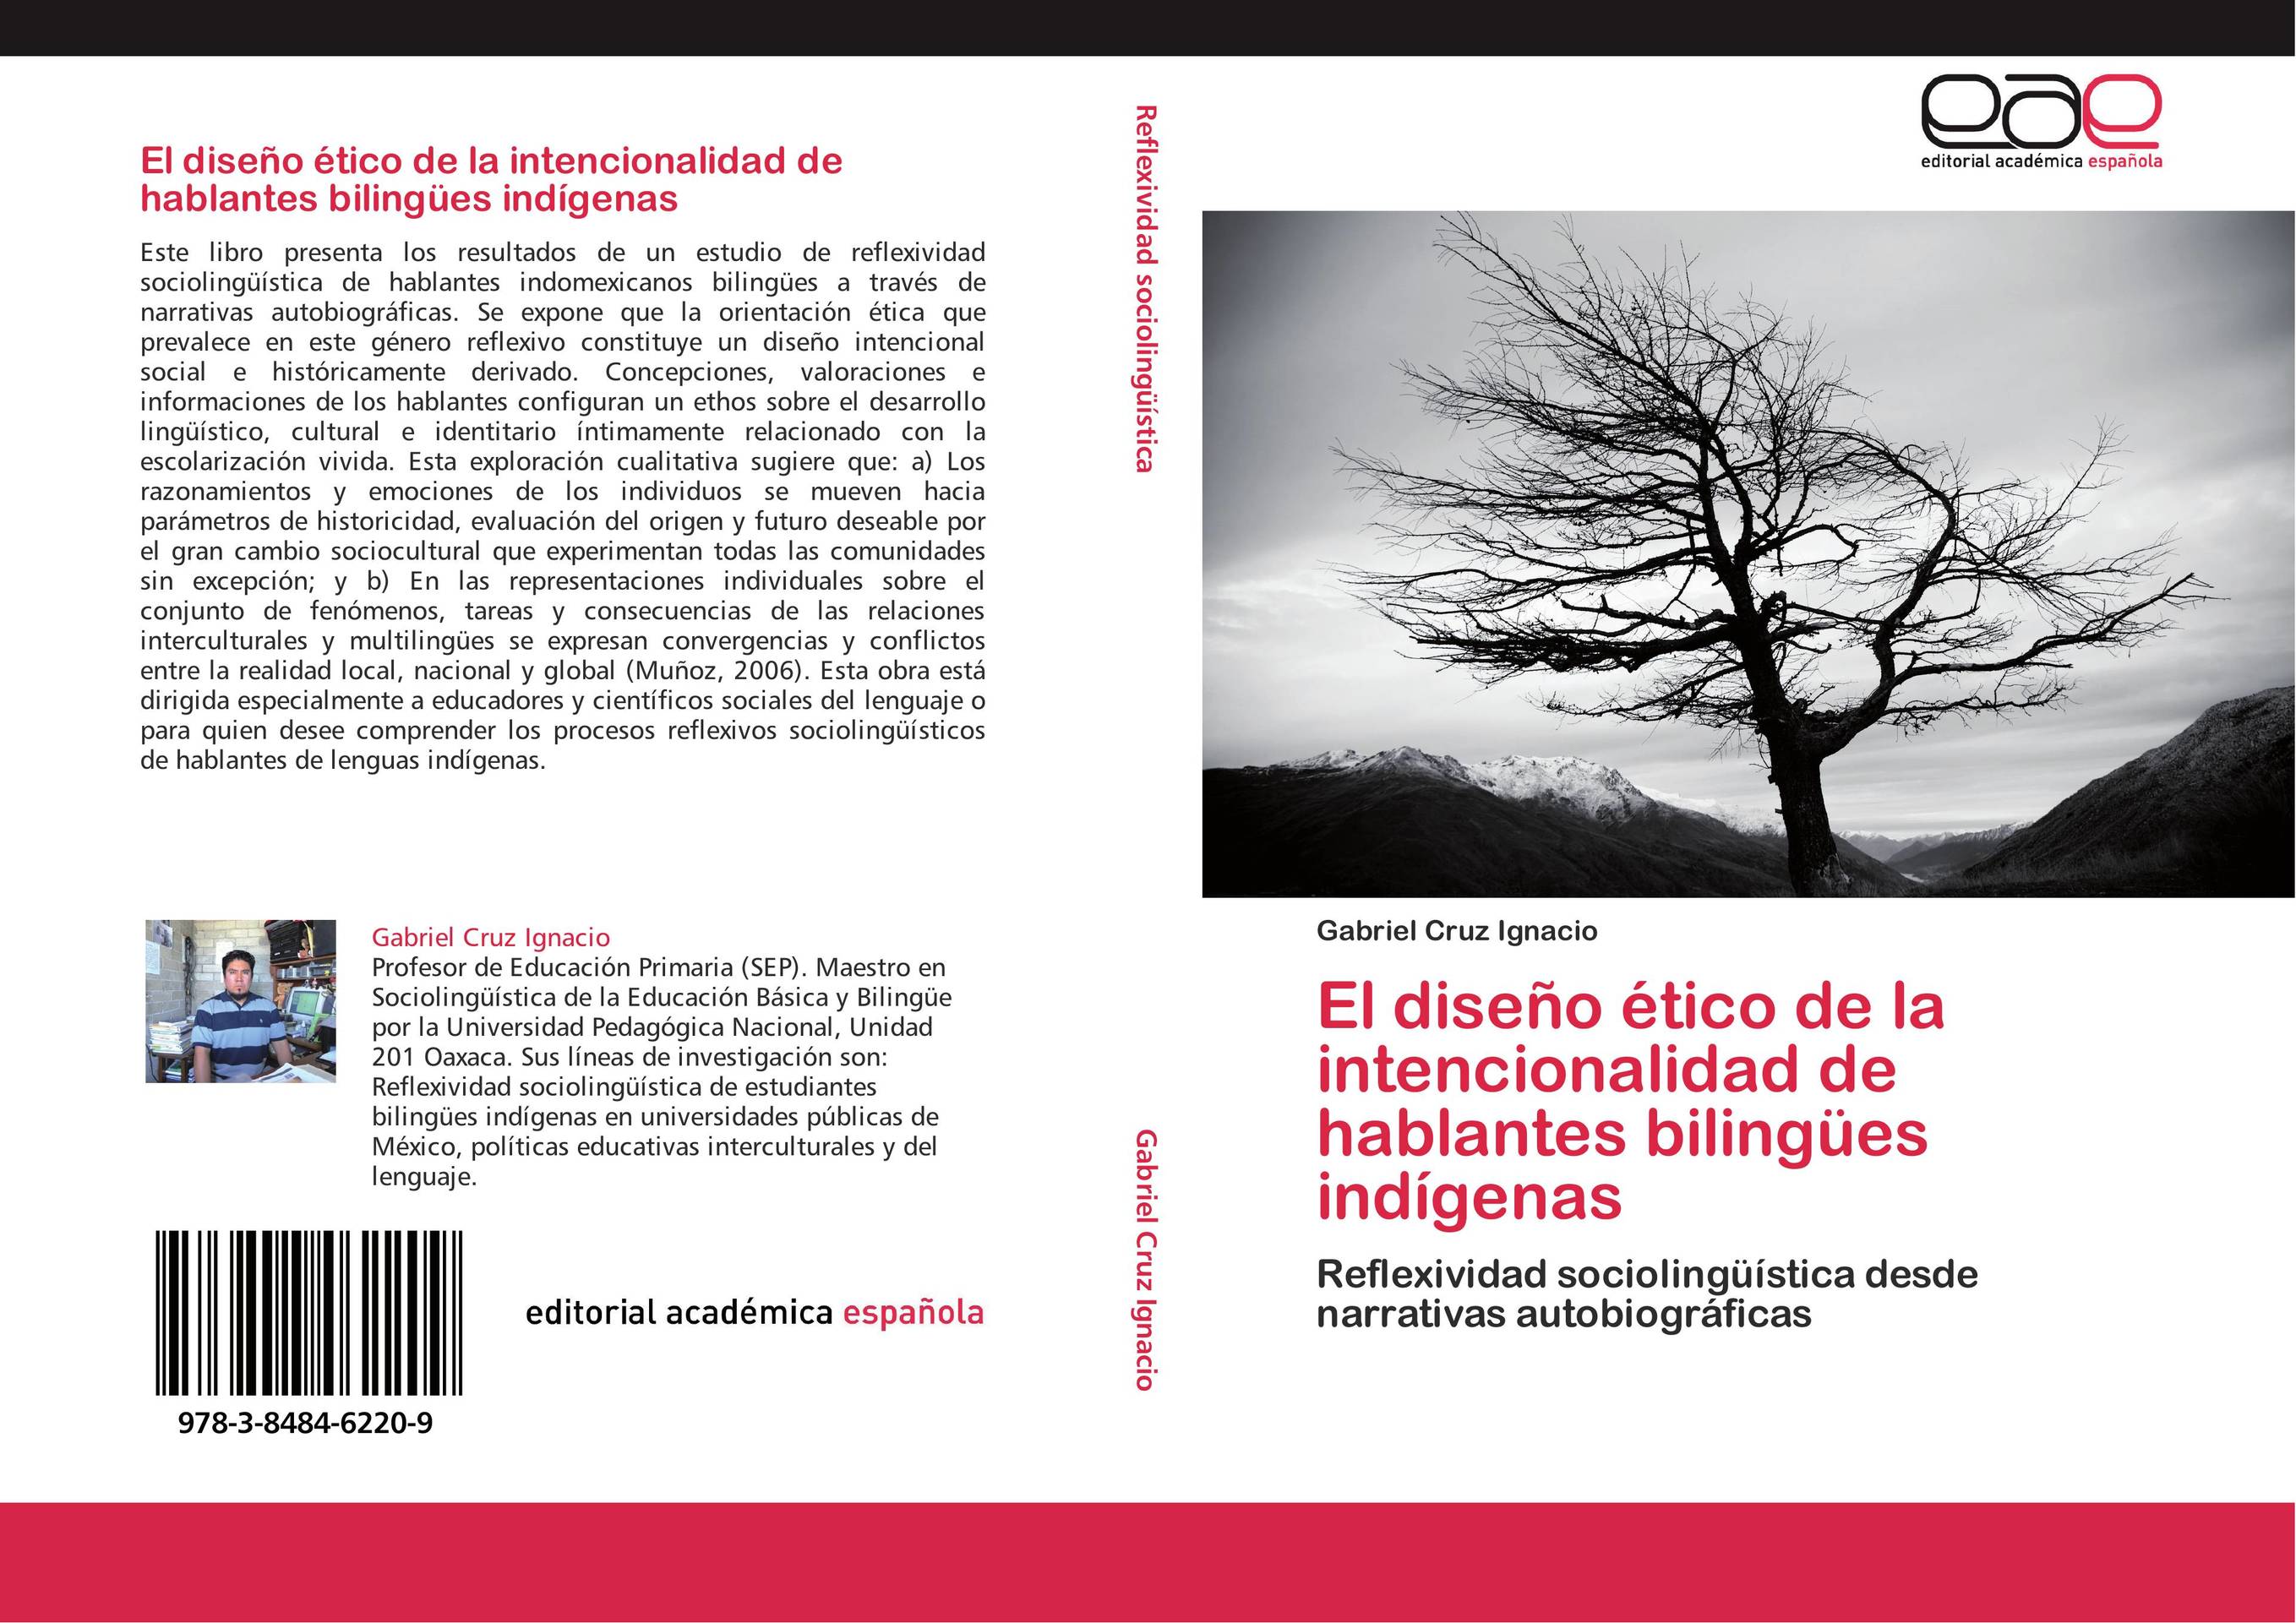 El diseño ético de la intencionalidad de hablantes bilingües indígenas